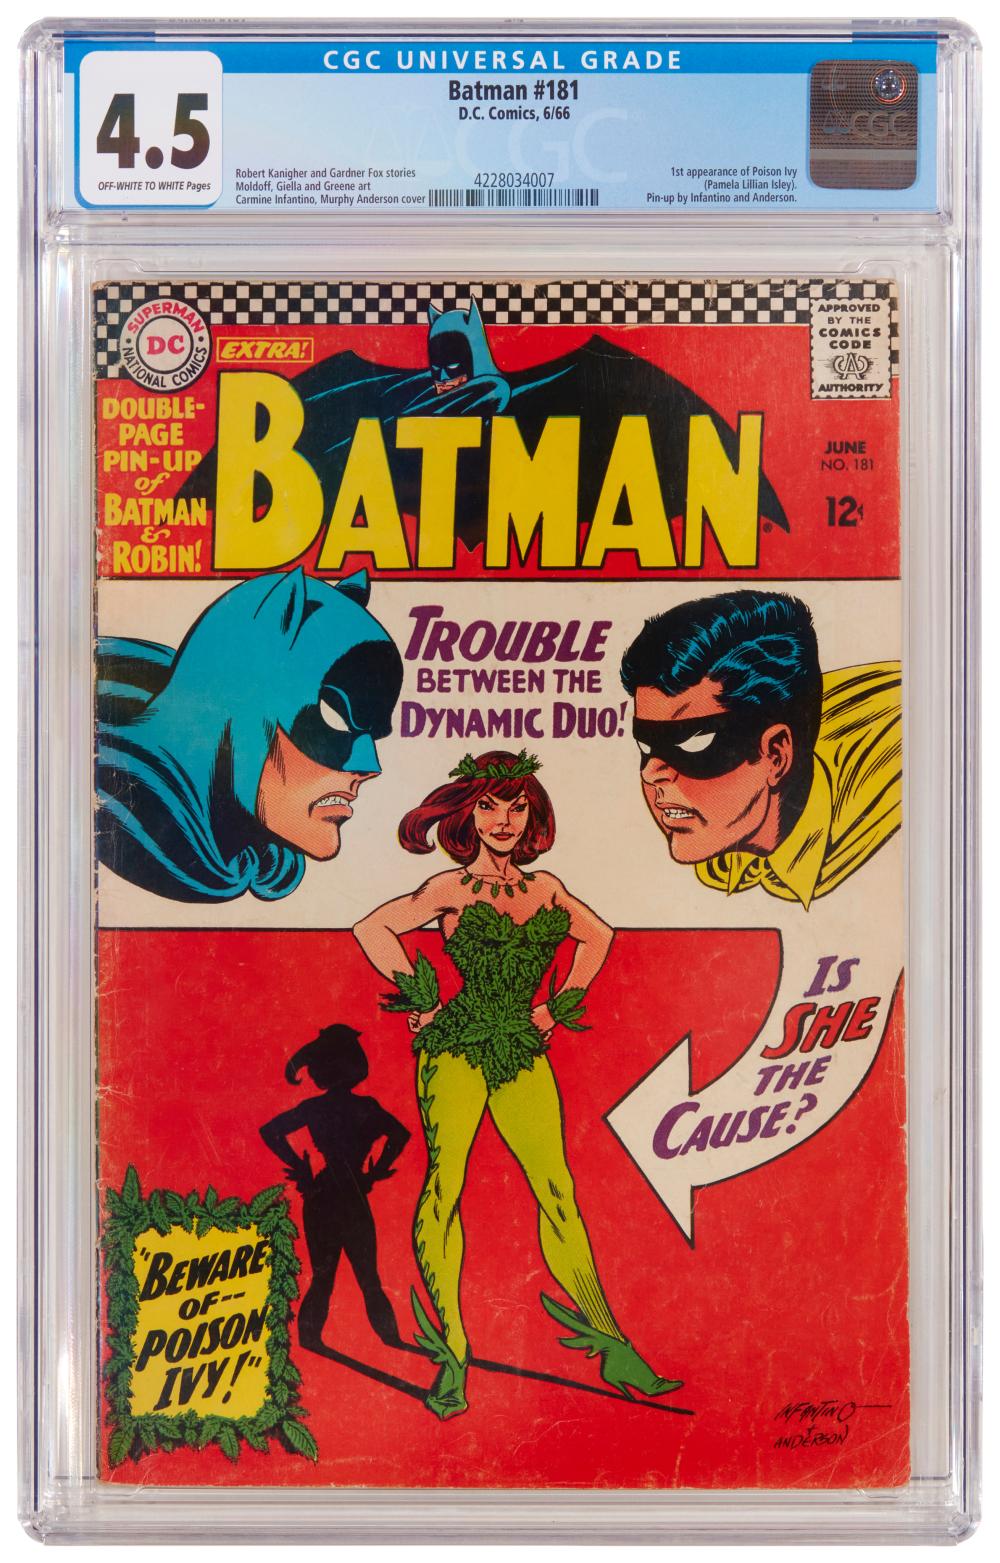 BATMAN #181 (DC COMICS, 1966)Batman